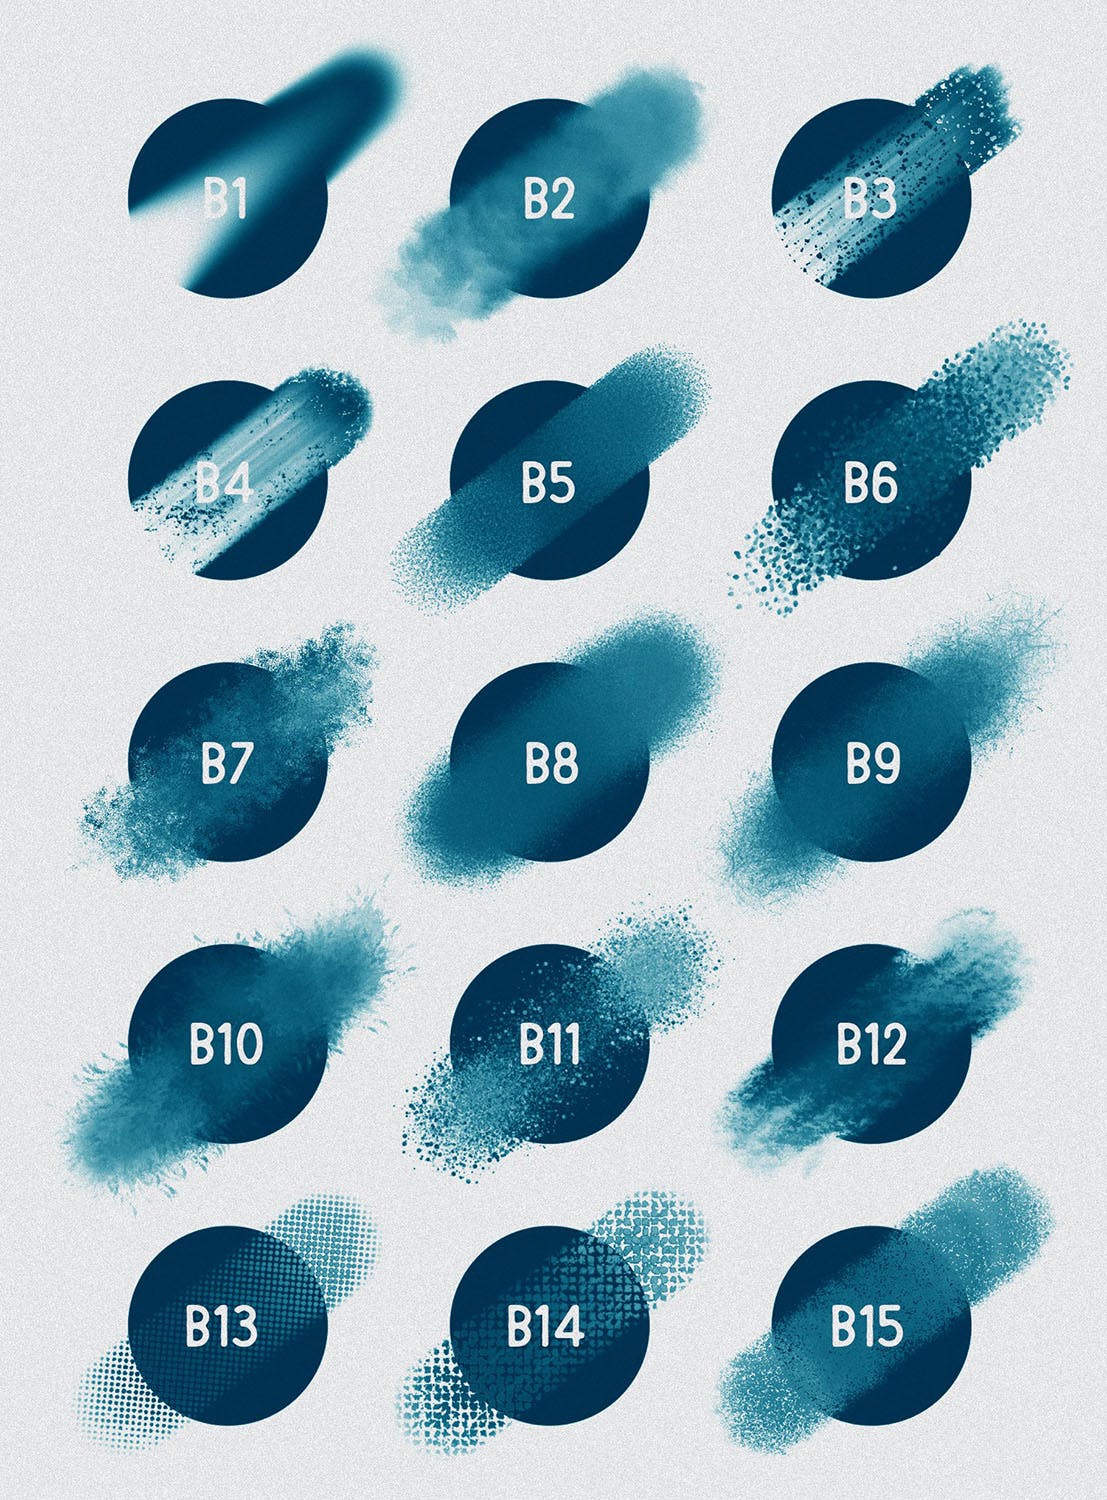 30种不同样式的Procreate专用混合笔刷16图库精选 Procreate: Blender Brushes插图(2)